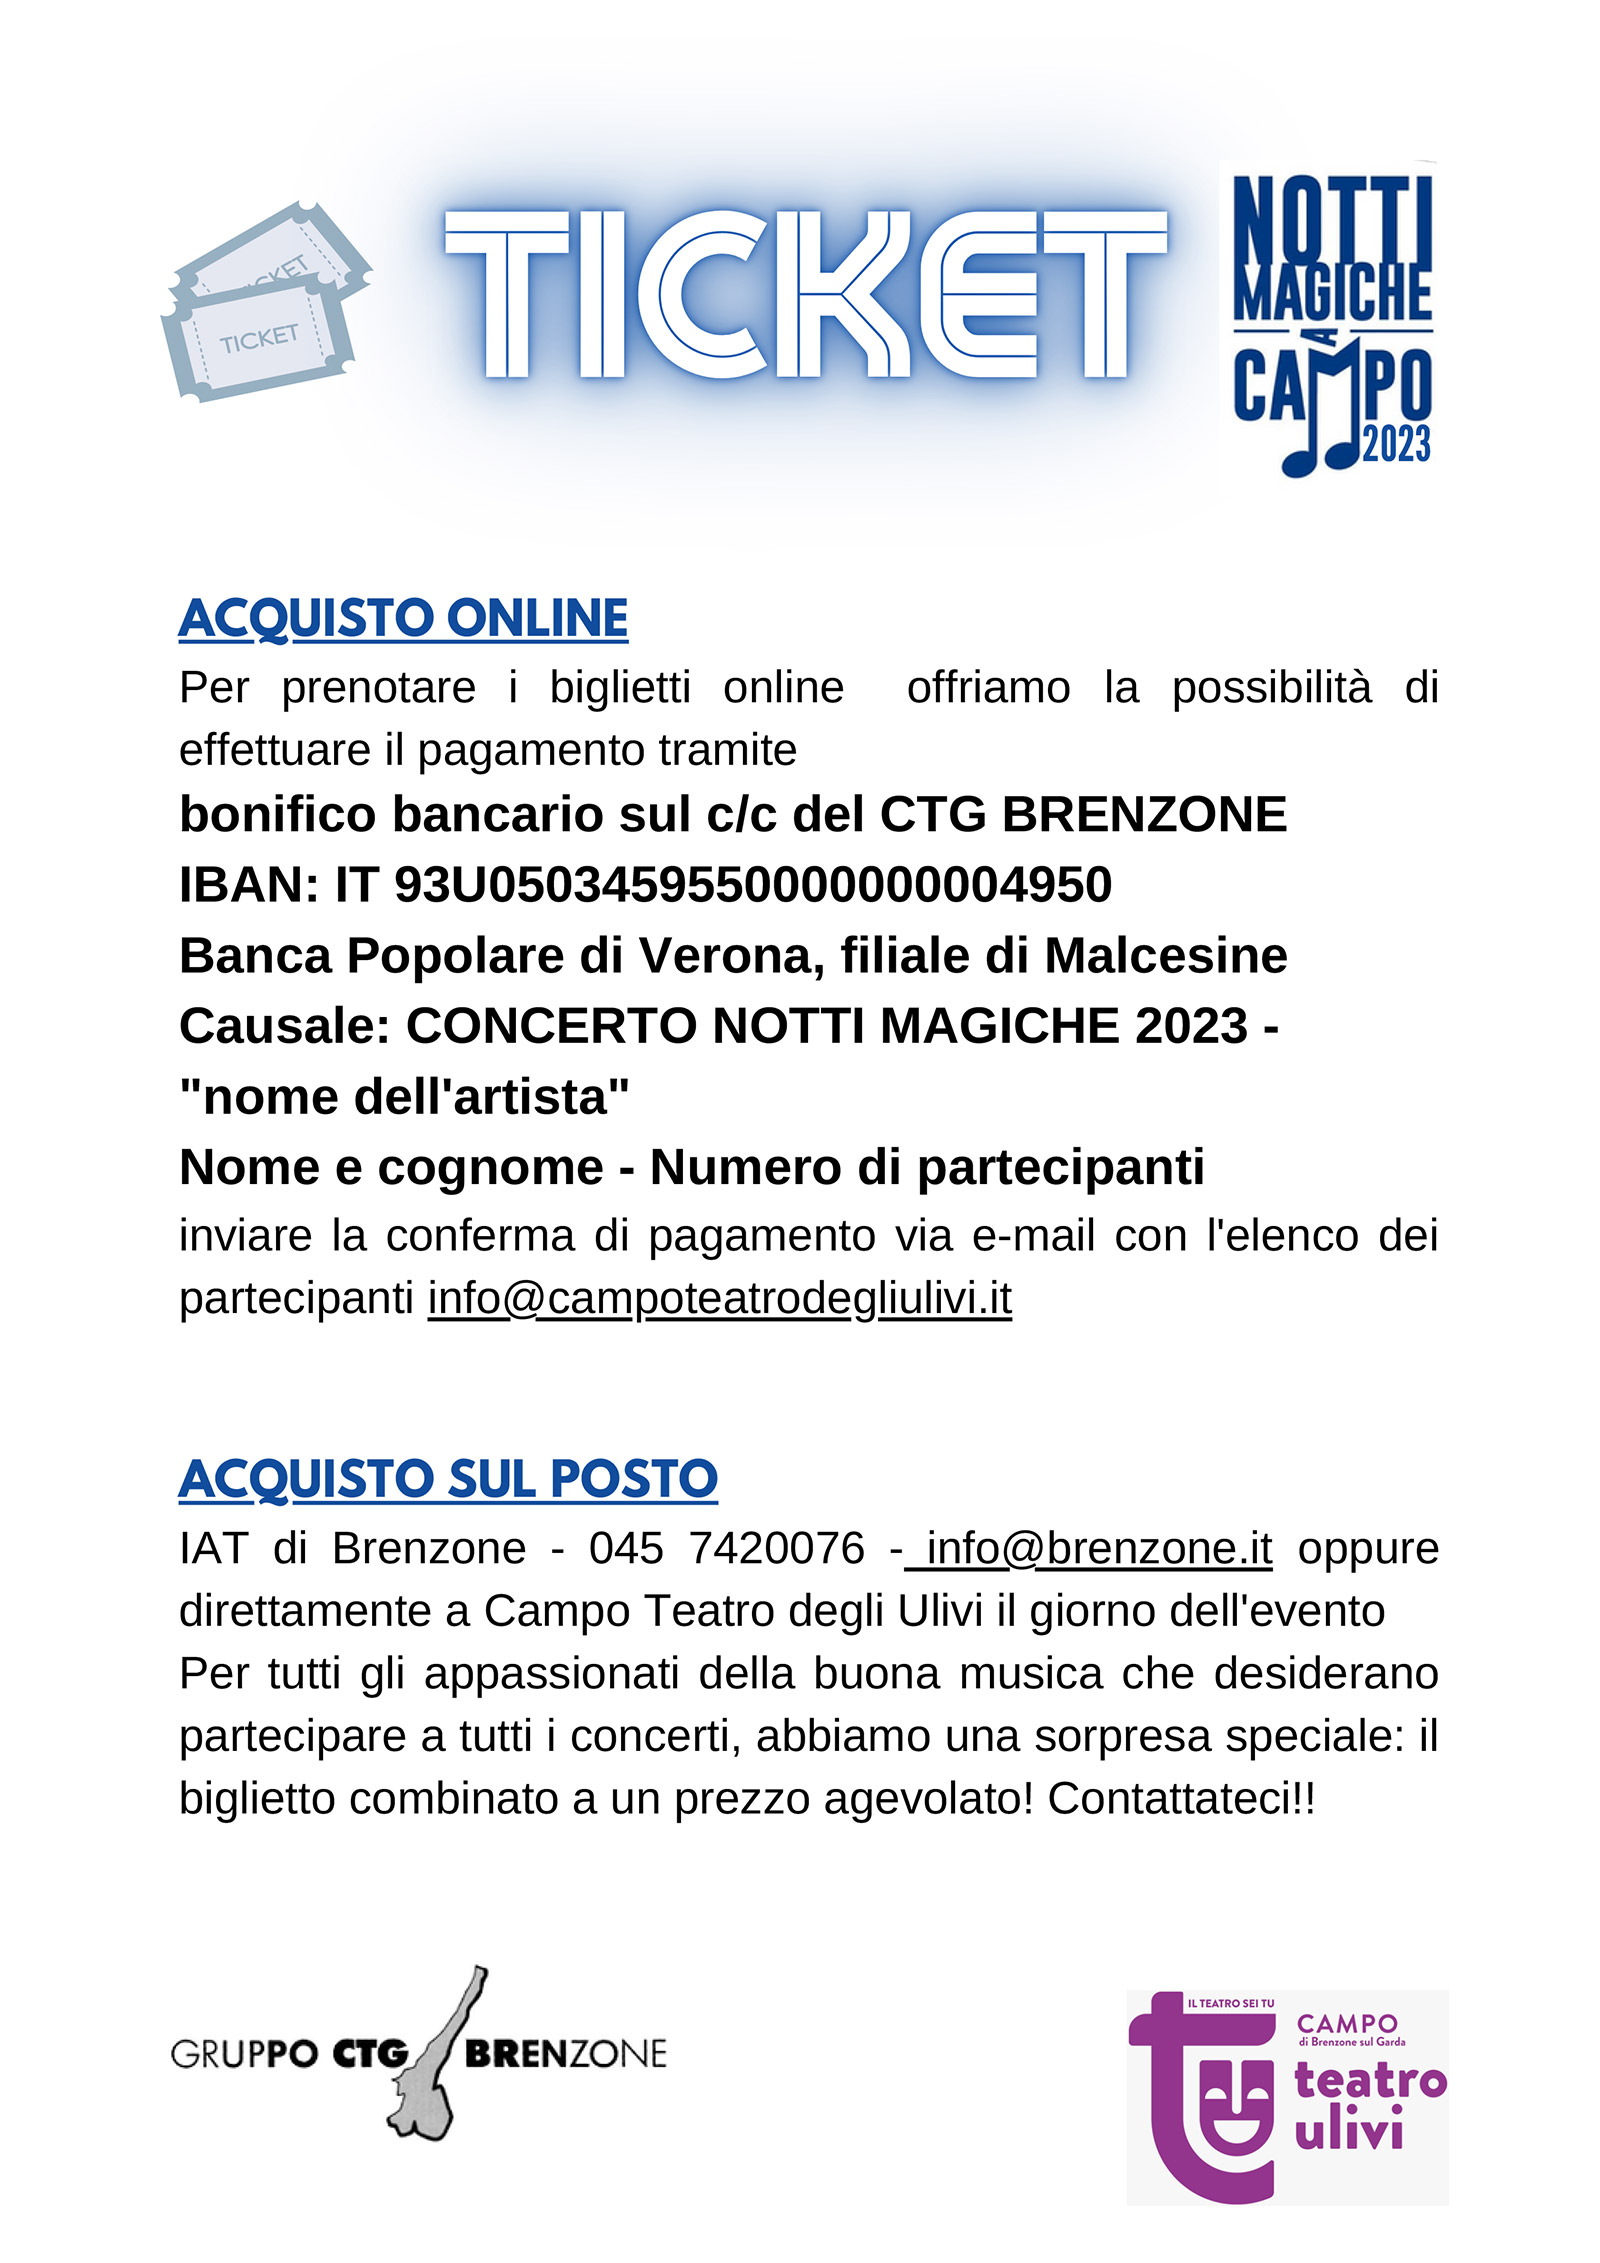 Notti Magiche a Campo:  Biglietti - Eintrittskarten - Tickets